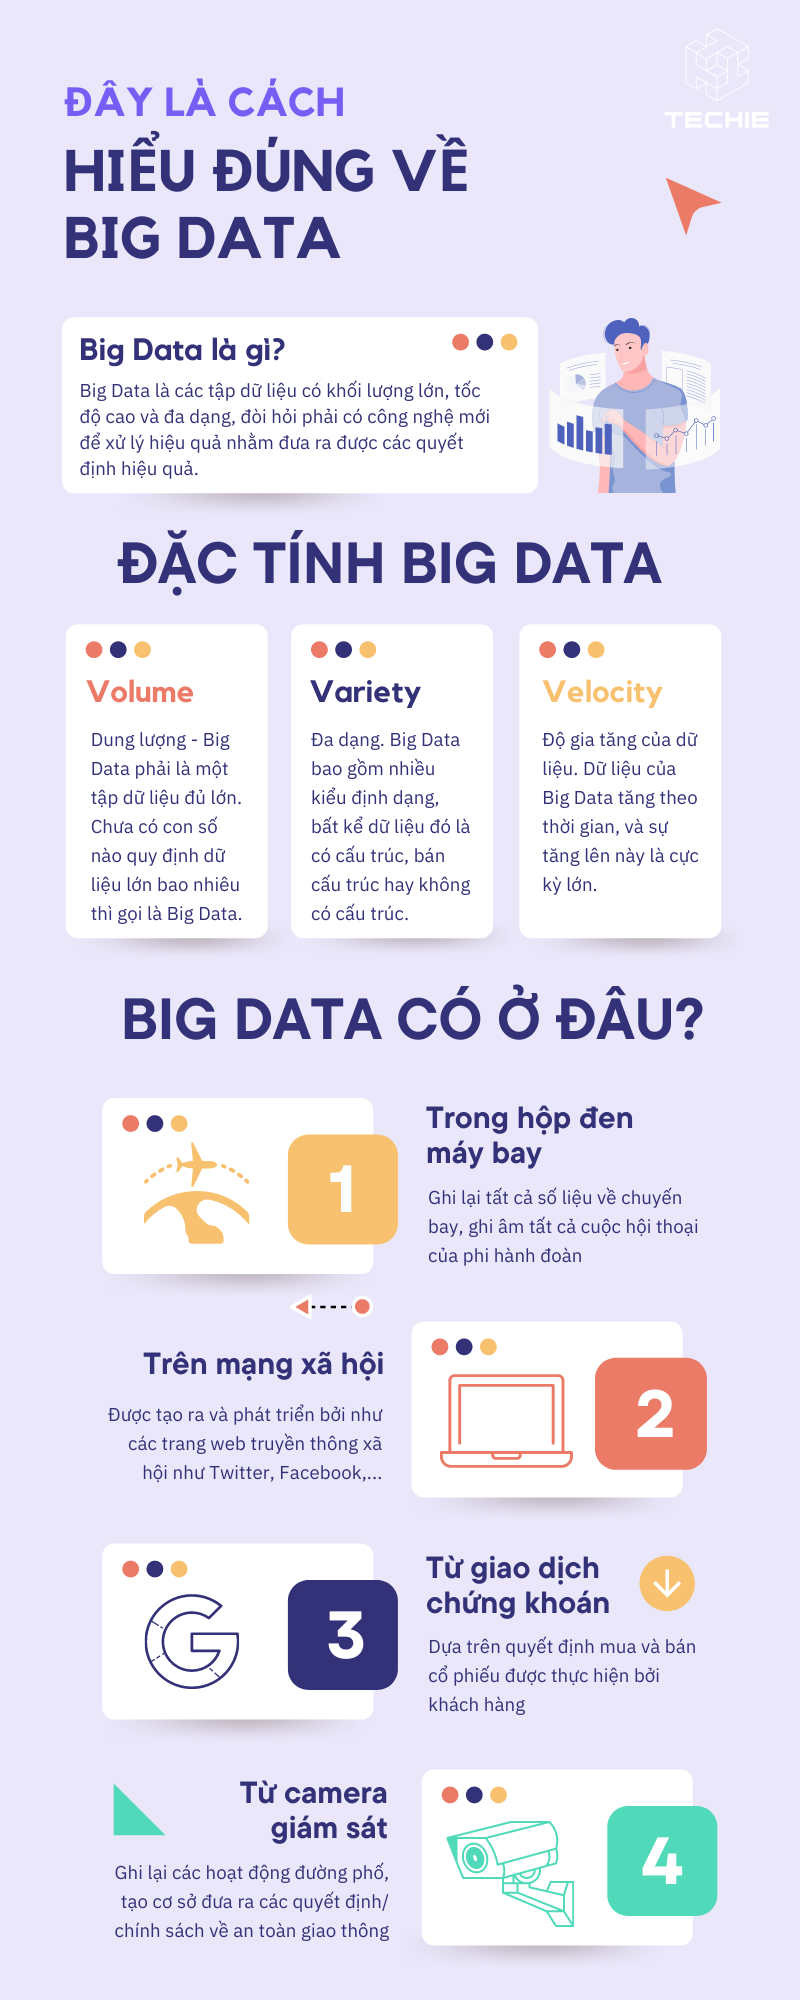 cach-hieu-ve-big-data